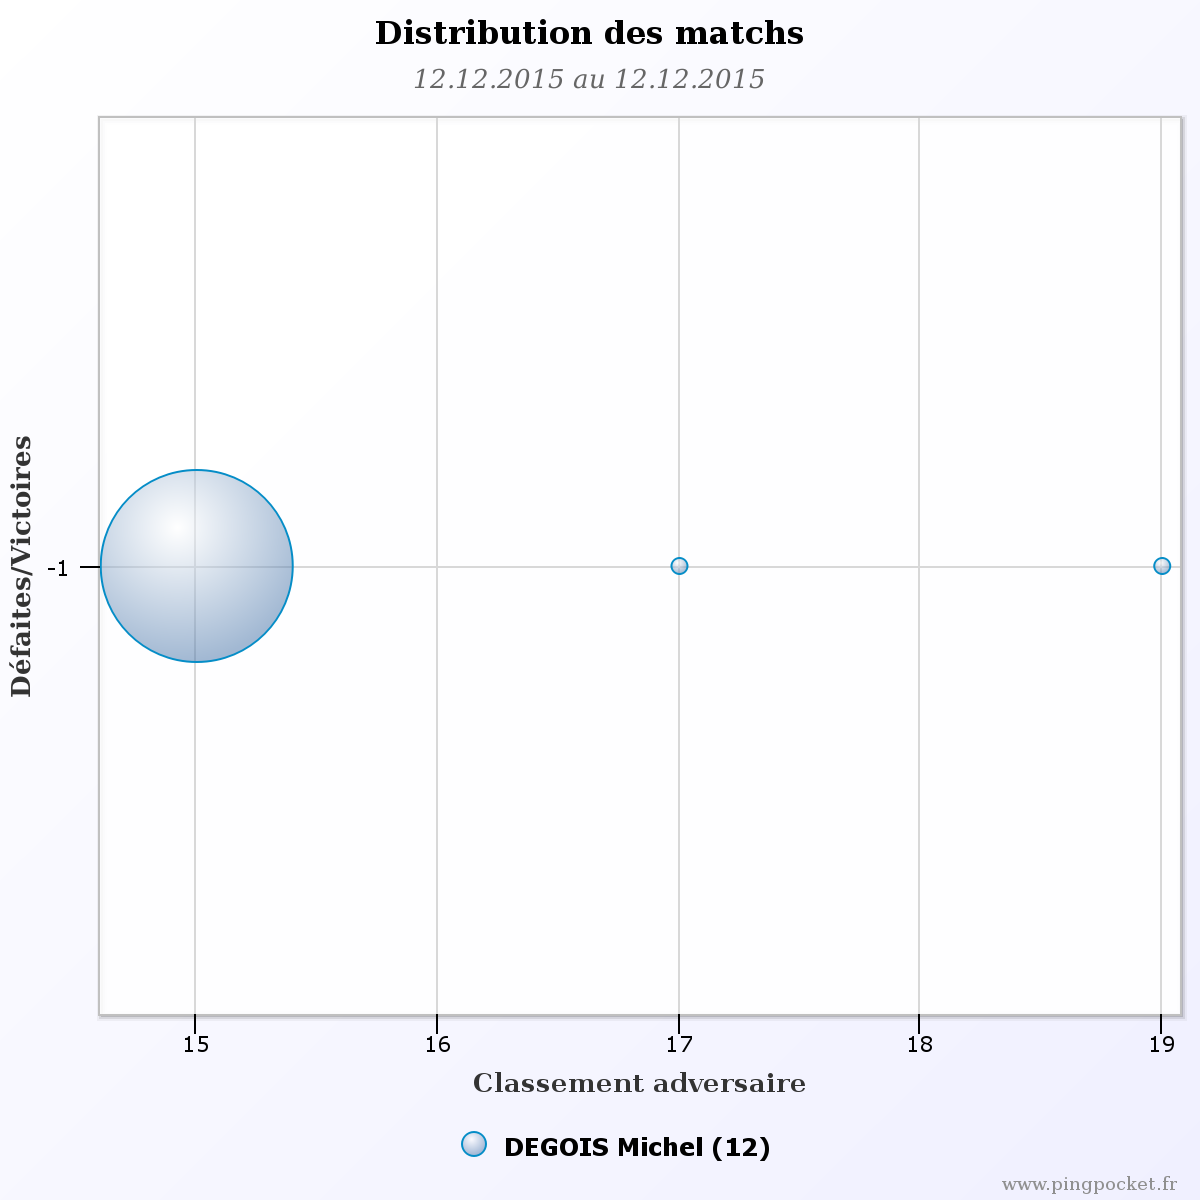 DEGOIS Michel-103619 graphique distribution matchs